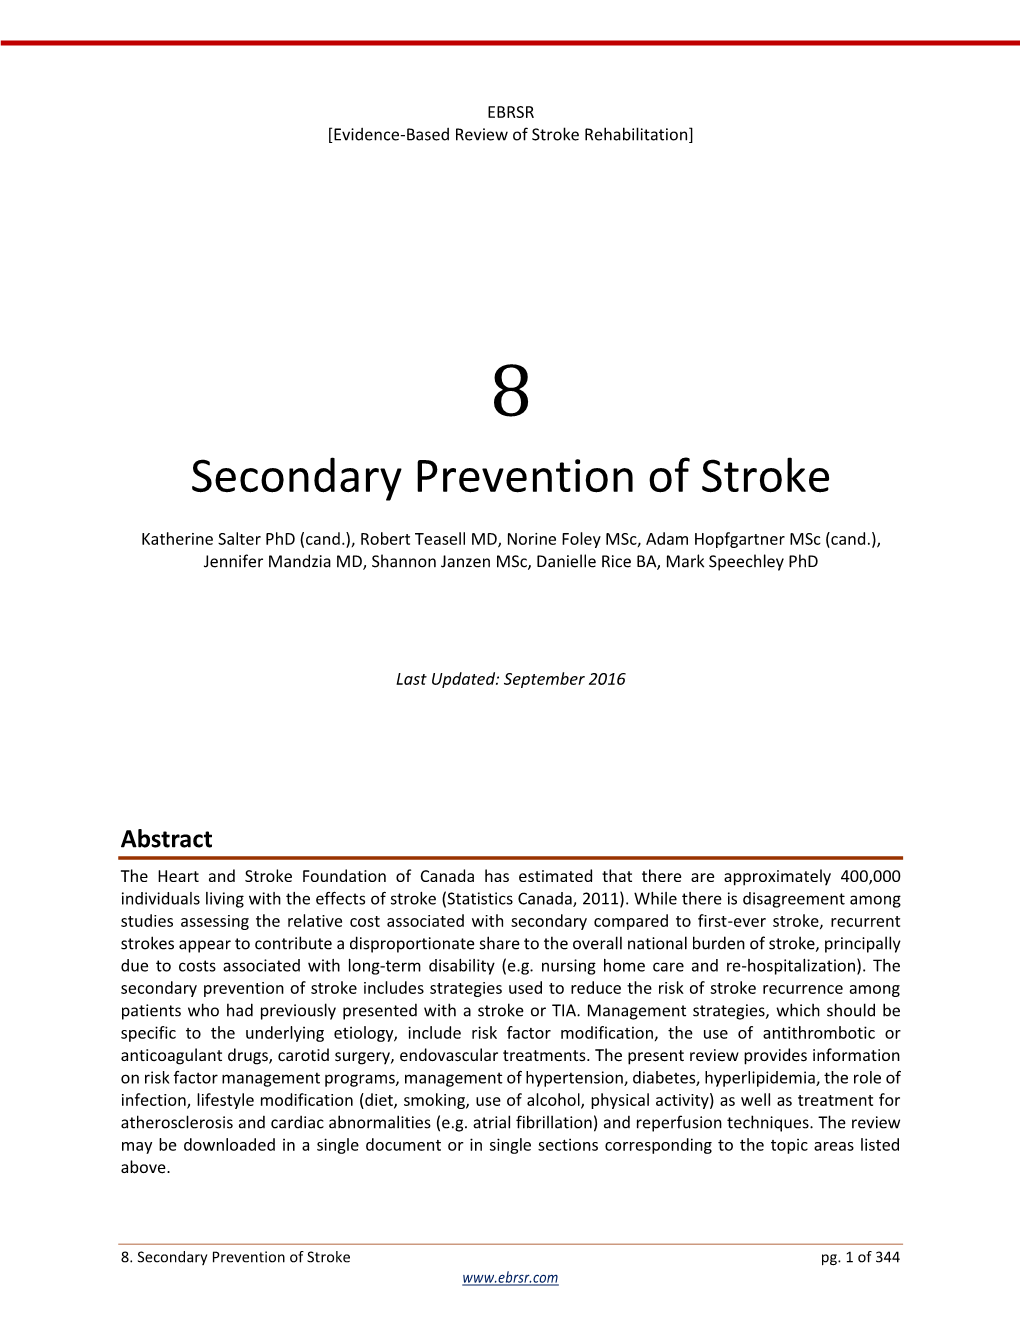 EBRSR: Secondary Prevention of Stroke